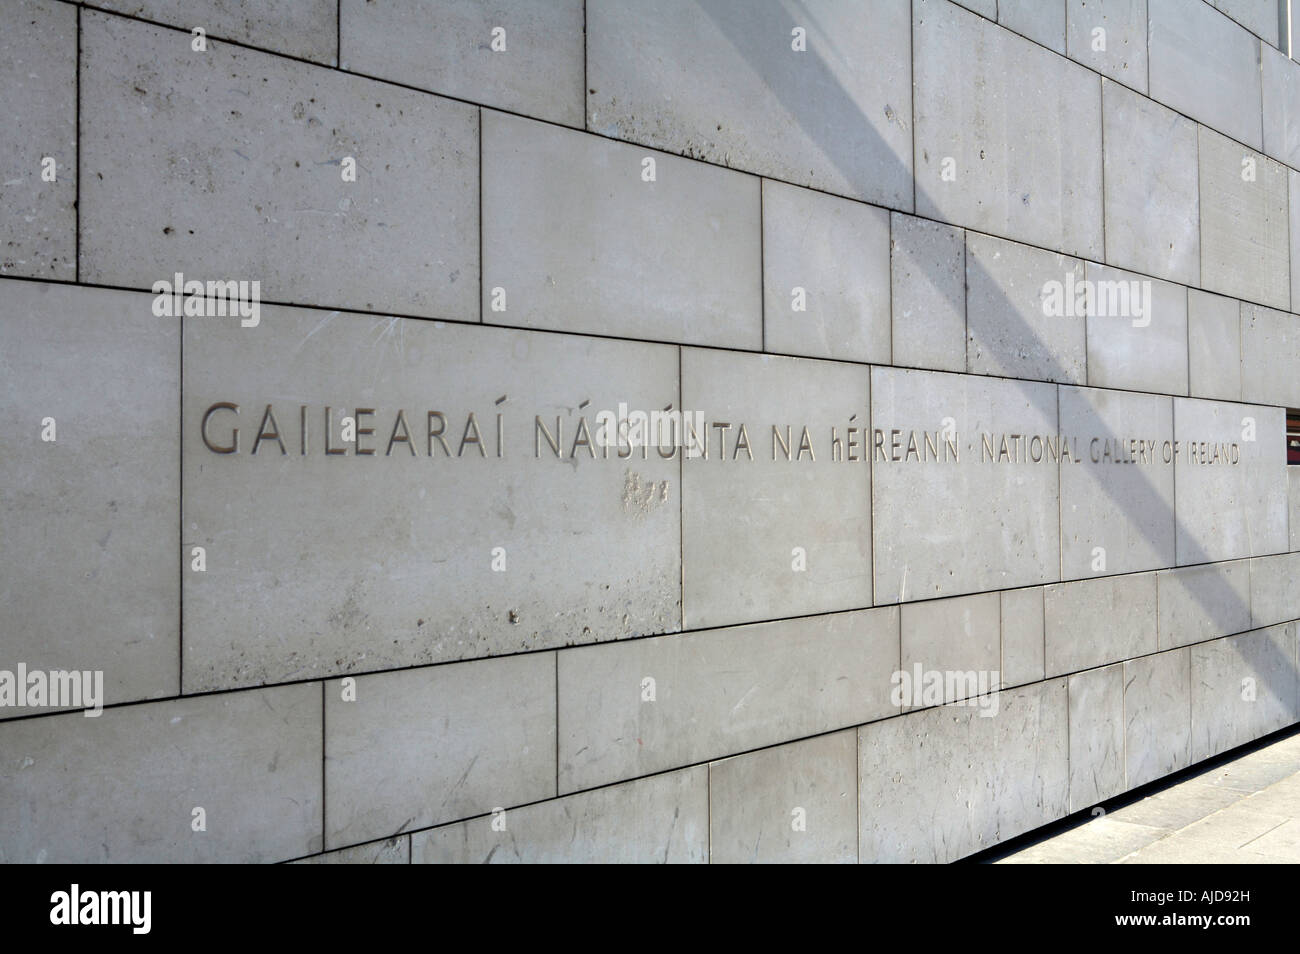 Wand vor der National Gallery of Ireland mit "National Gallery of Ireland" geschrieben gemeißelt drauf in irischer Sprache Stockfoto